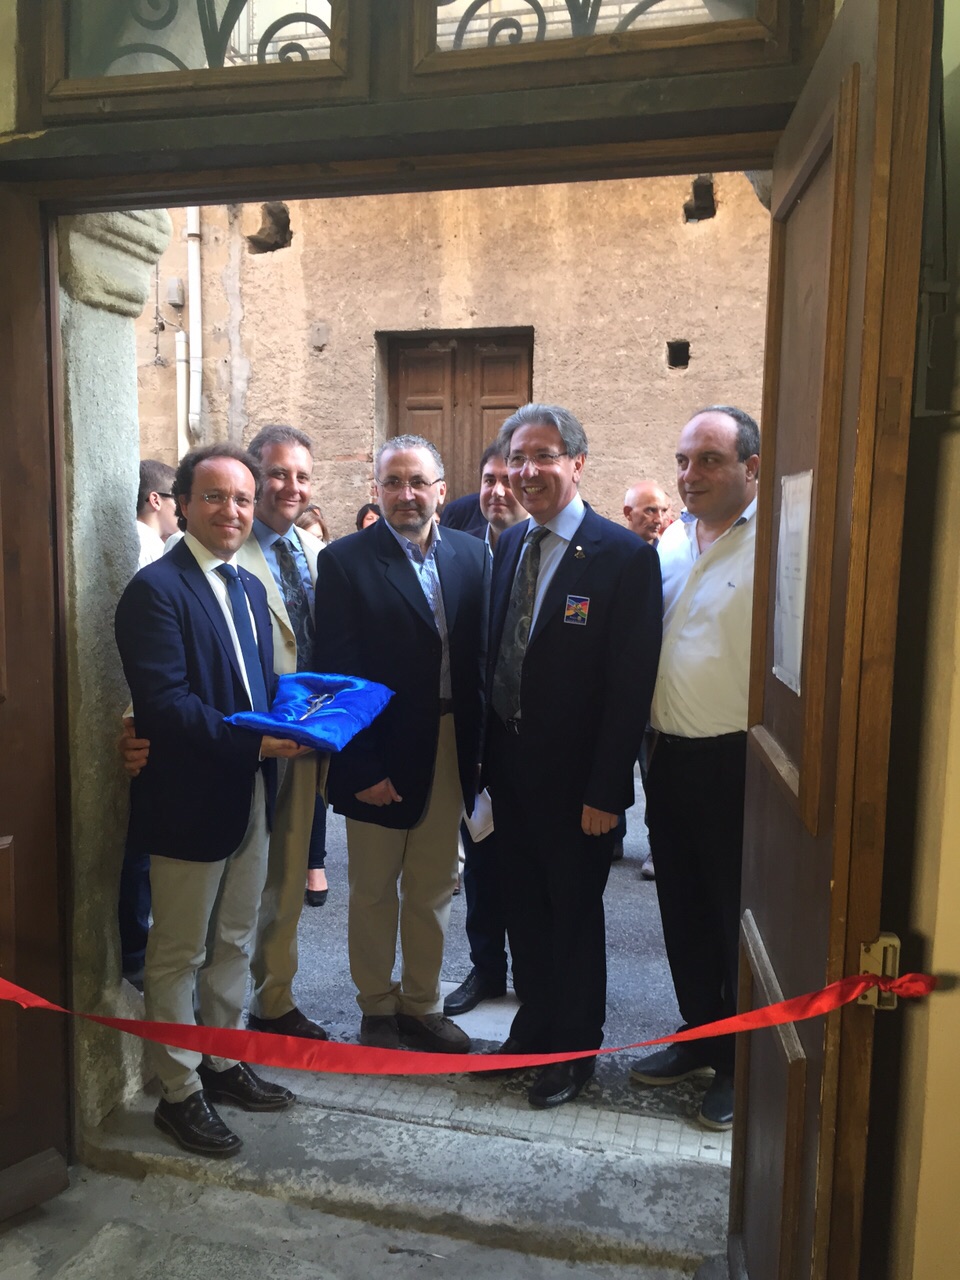 013 - Presenze del Governatore - RC S.Agata di Militello - Ficarra (ME) Luglio 2015/001.jpg